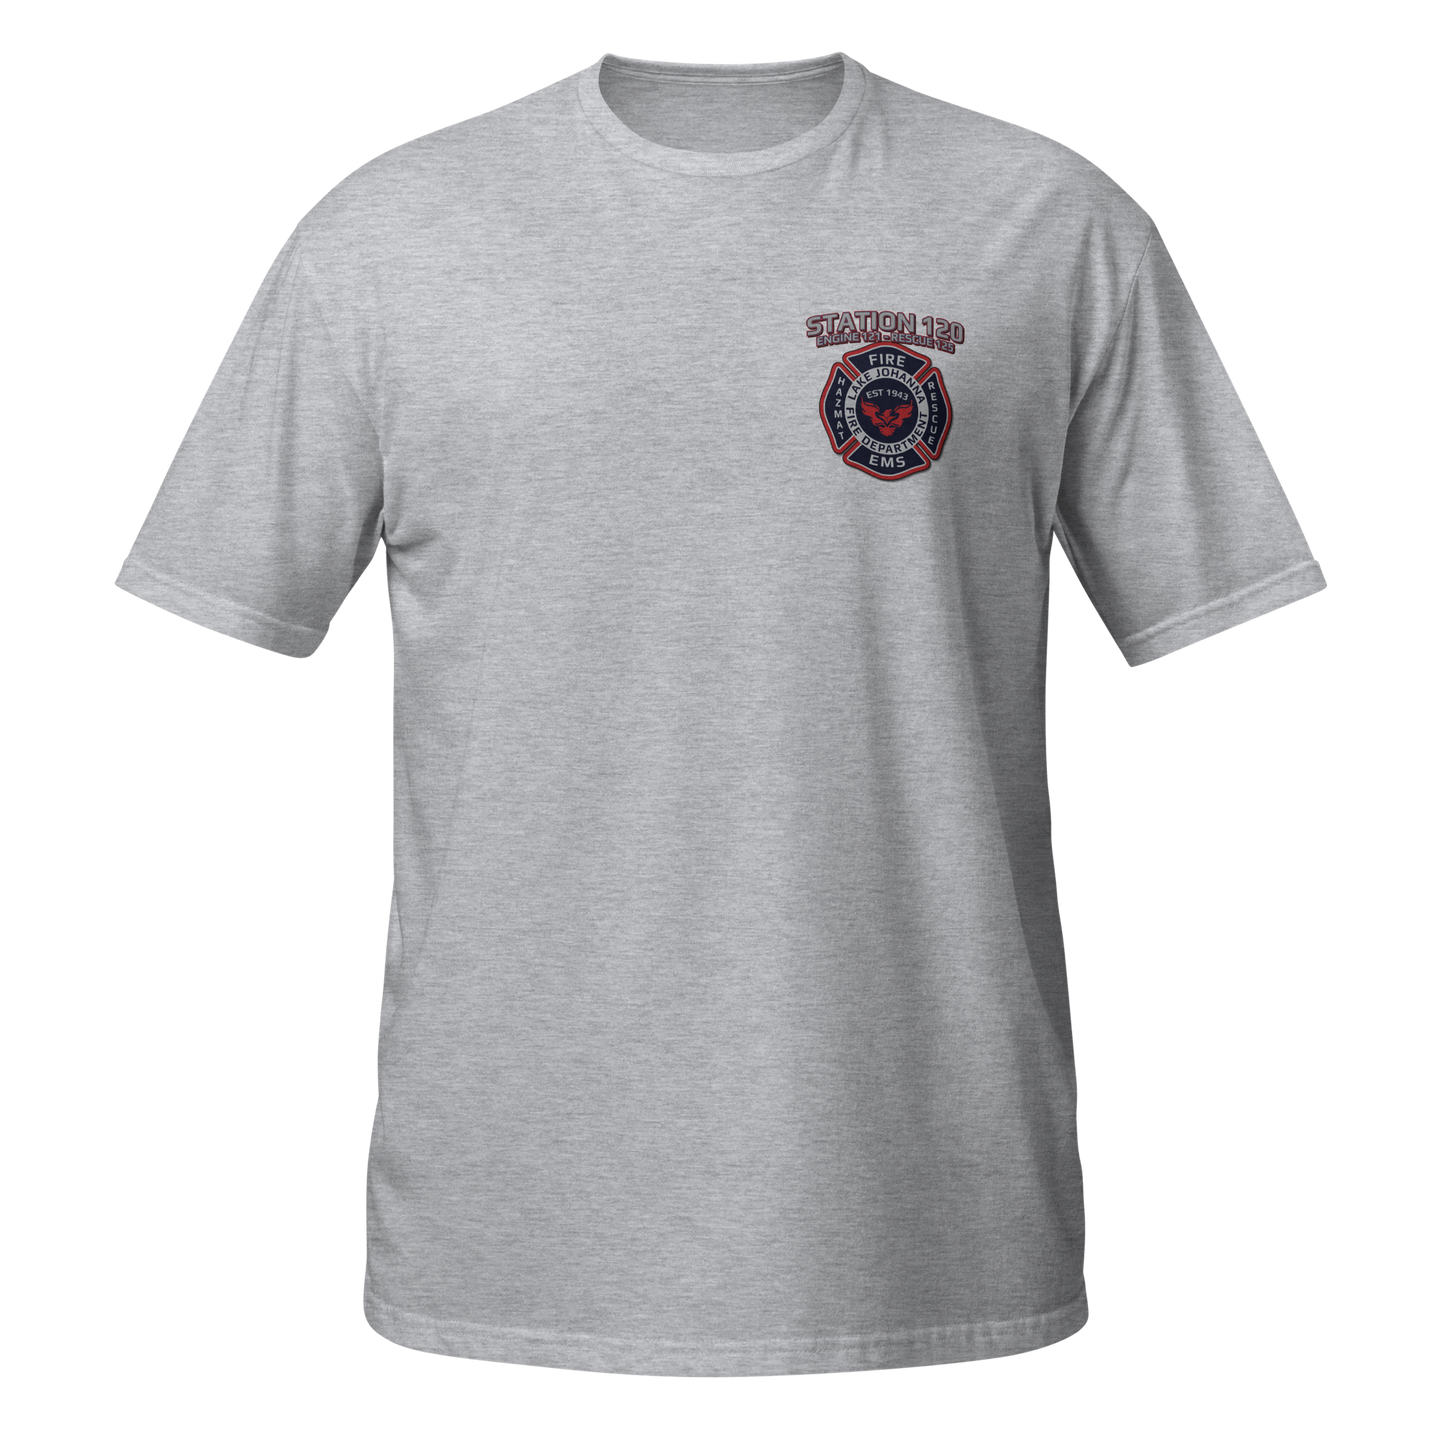 Station Series - LJFD Station 120 - Unisex Ringspun T-Shirt